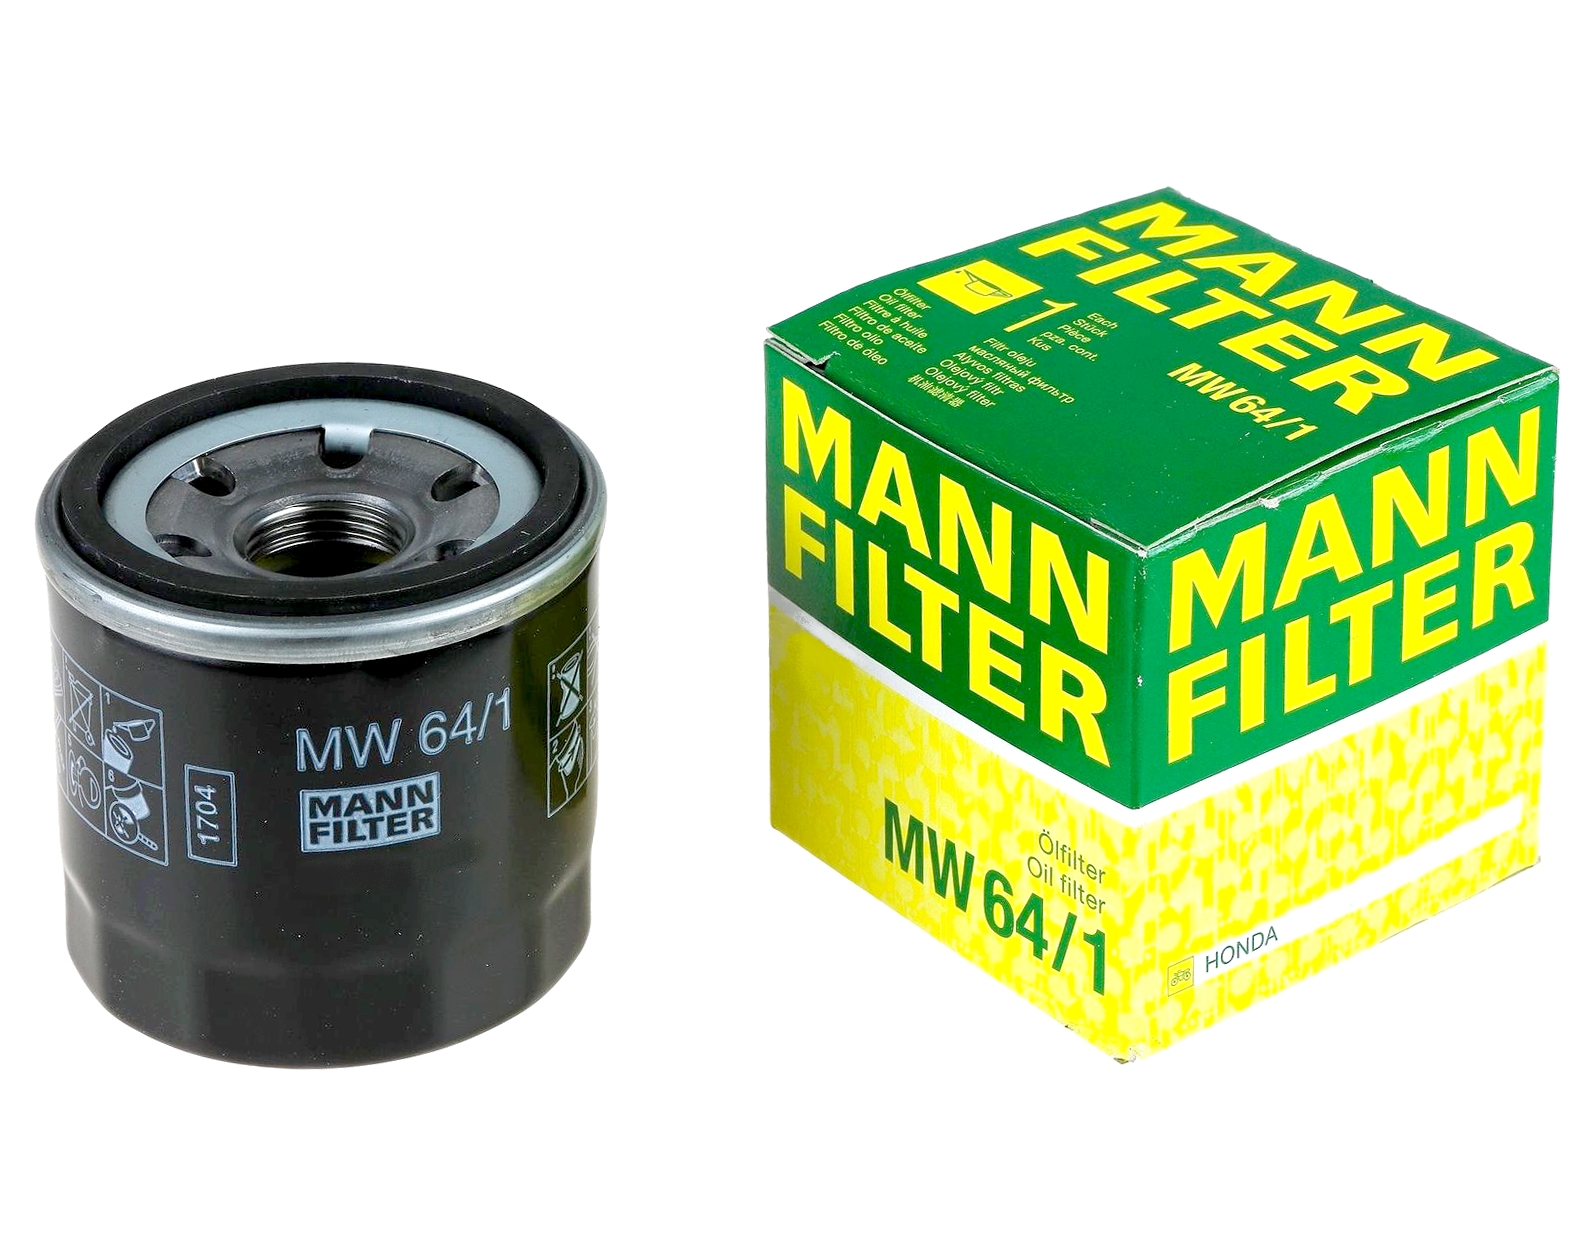 Масло фильтр отзывы. Фильтр масляный Mann mw64. Масляный фильтр Mannol mw64. Mann-Filter MW 64/1 фильтр масляный для мотоциклов. Фильтр Манн 64/1 на Хонда.